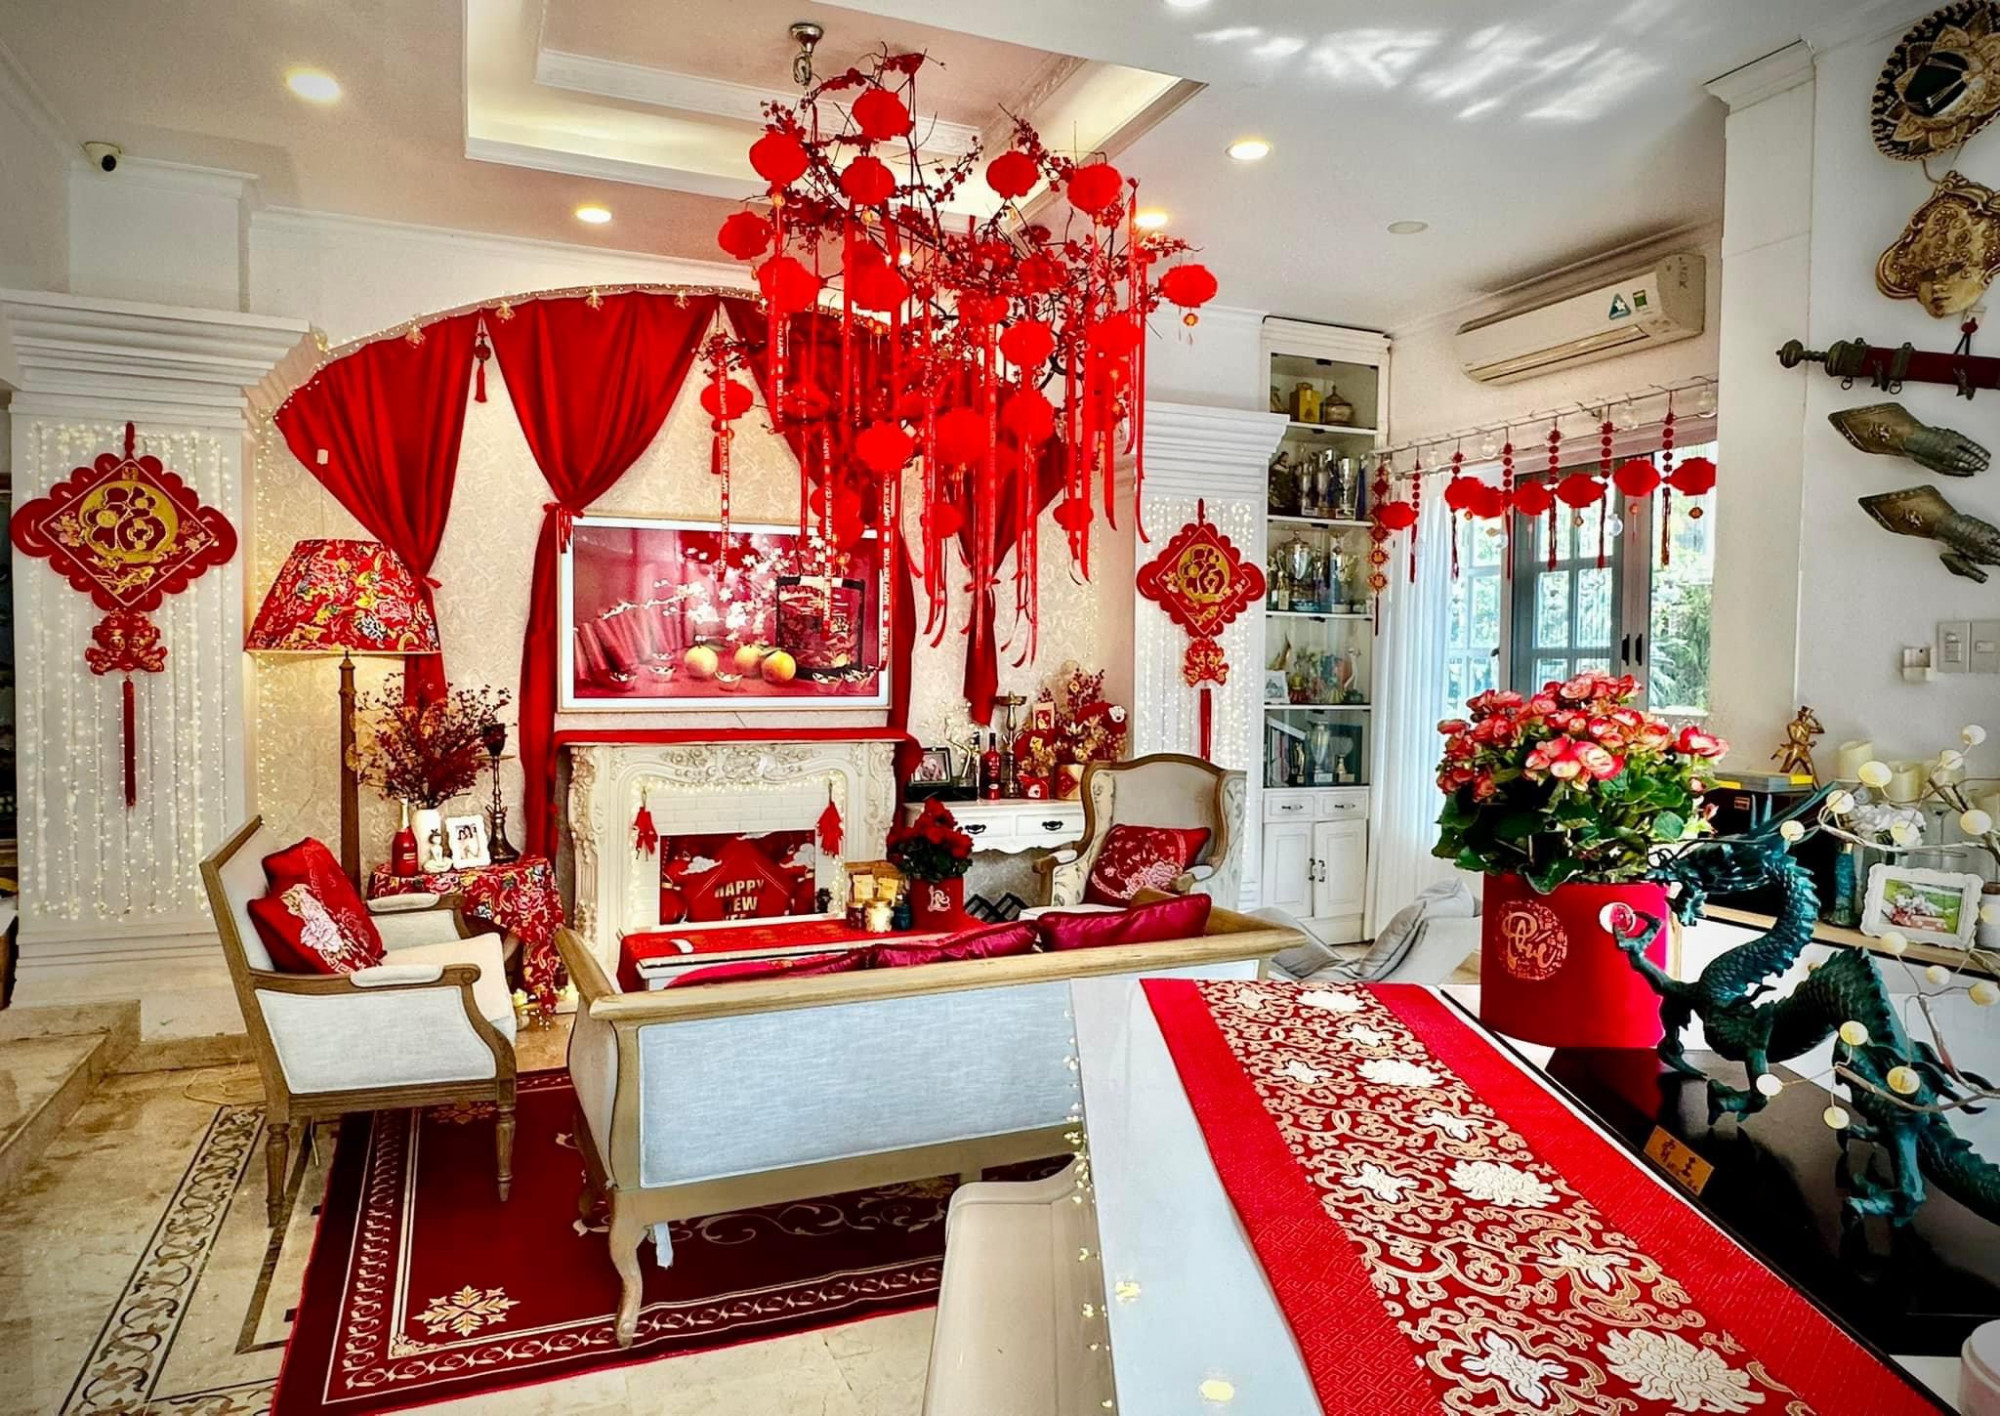 Vợ chồng nhạc sĩ Minh Khang, người mẫu Thúy Hạnh tự tay trang hoàng nhà cửa từ sớm. Với tông màu đỏ chủ đạo, không gian phòng khách, phòng bếp của ngôi nhà ngập tràn câu đối đỏ, những tấm thẻ cầu chúc điều tốt lành trong năm mới.